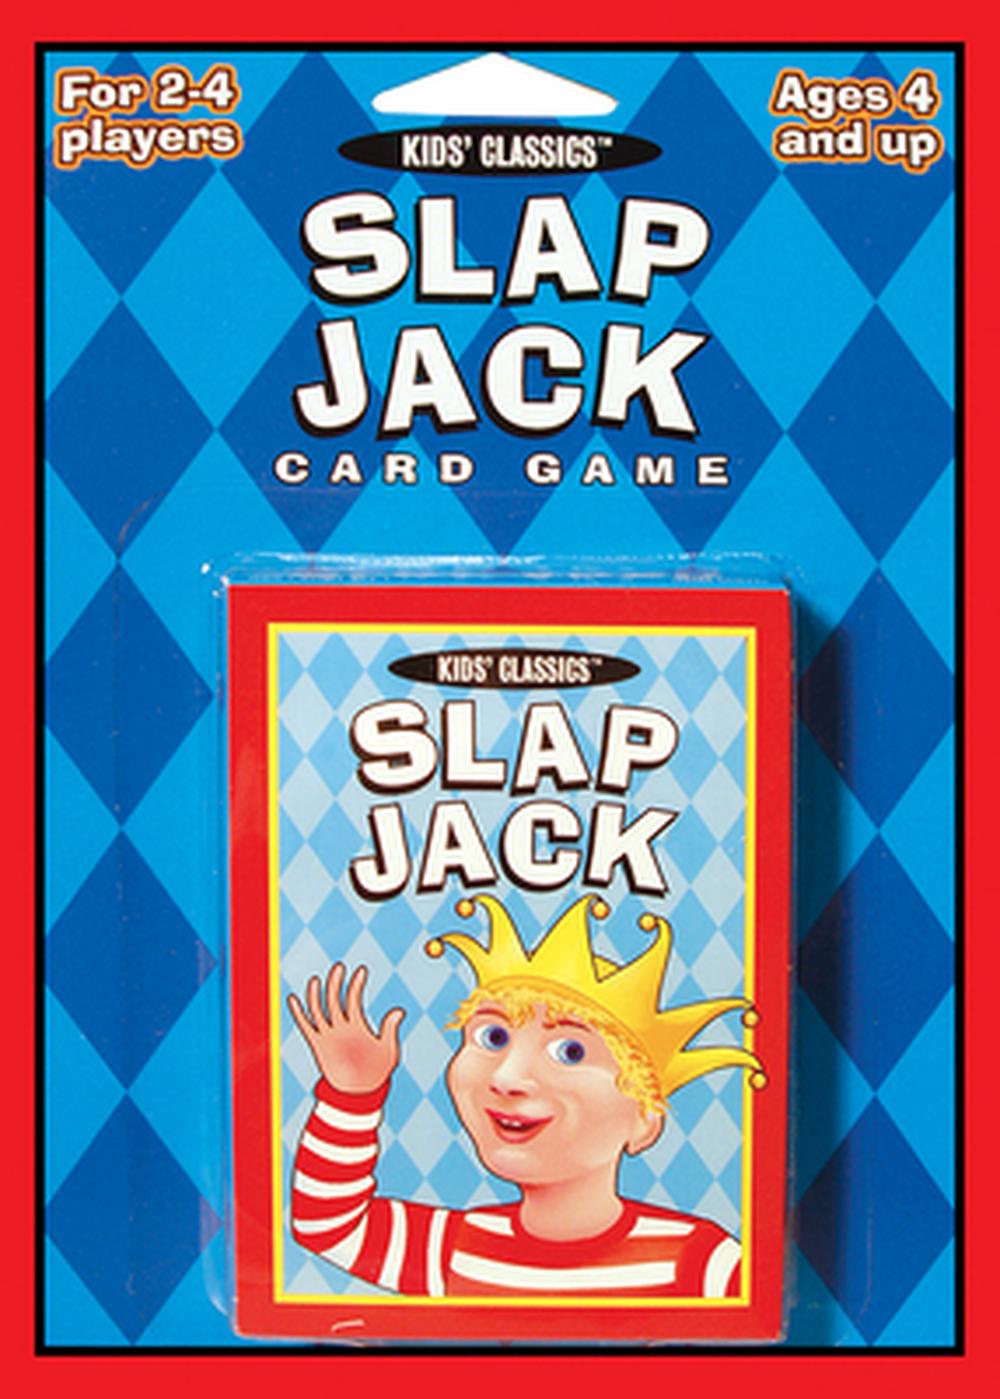 Wild jacks card game